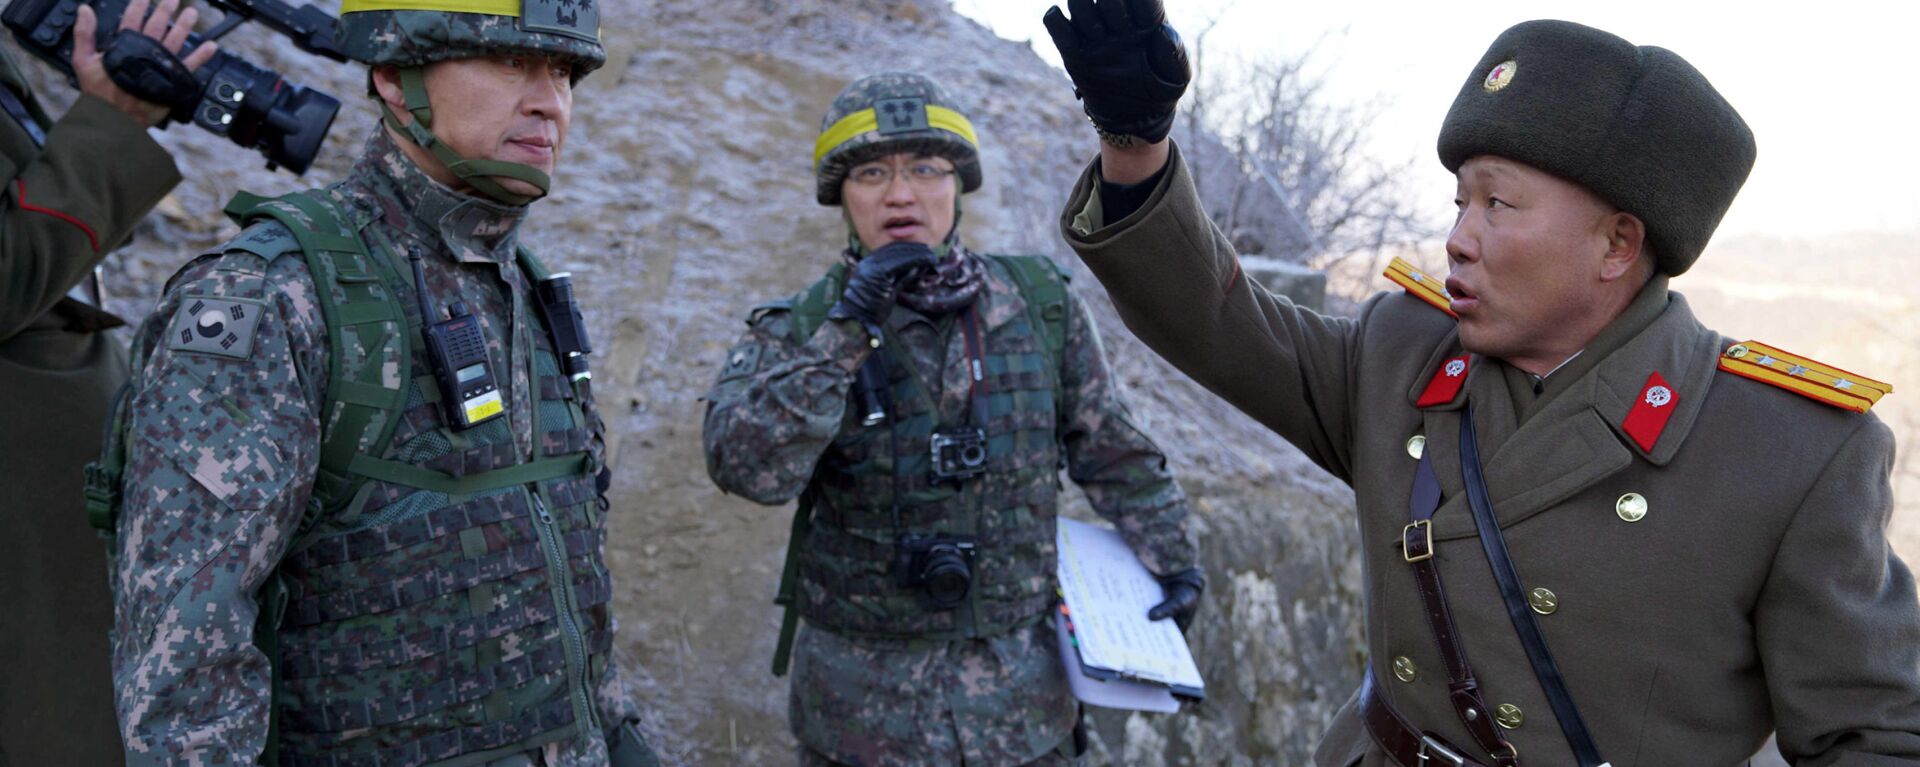 الحدود بين كوريا الجنوبية و كوريا الشمالية - الجنود - الجيش الكوري الجنوبي والشمالي، 12 ديسمبر/ كانون الأول 2018 - سبوتنيك عربي, 1920, 23.02.2022